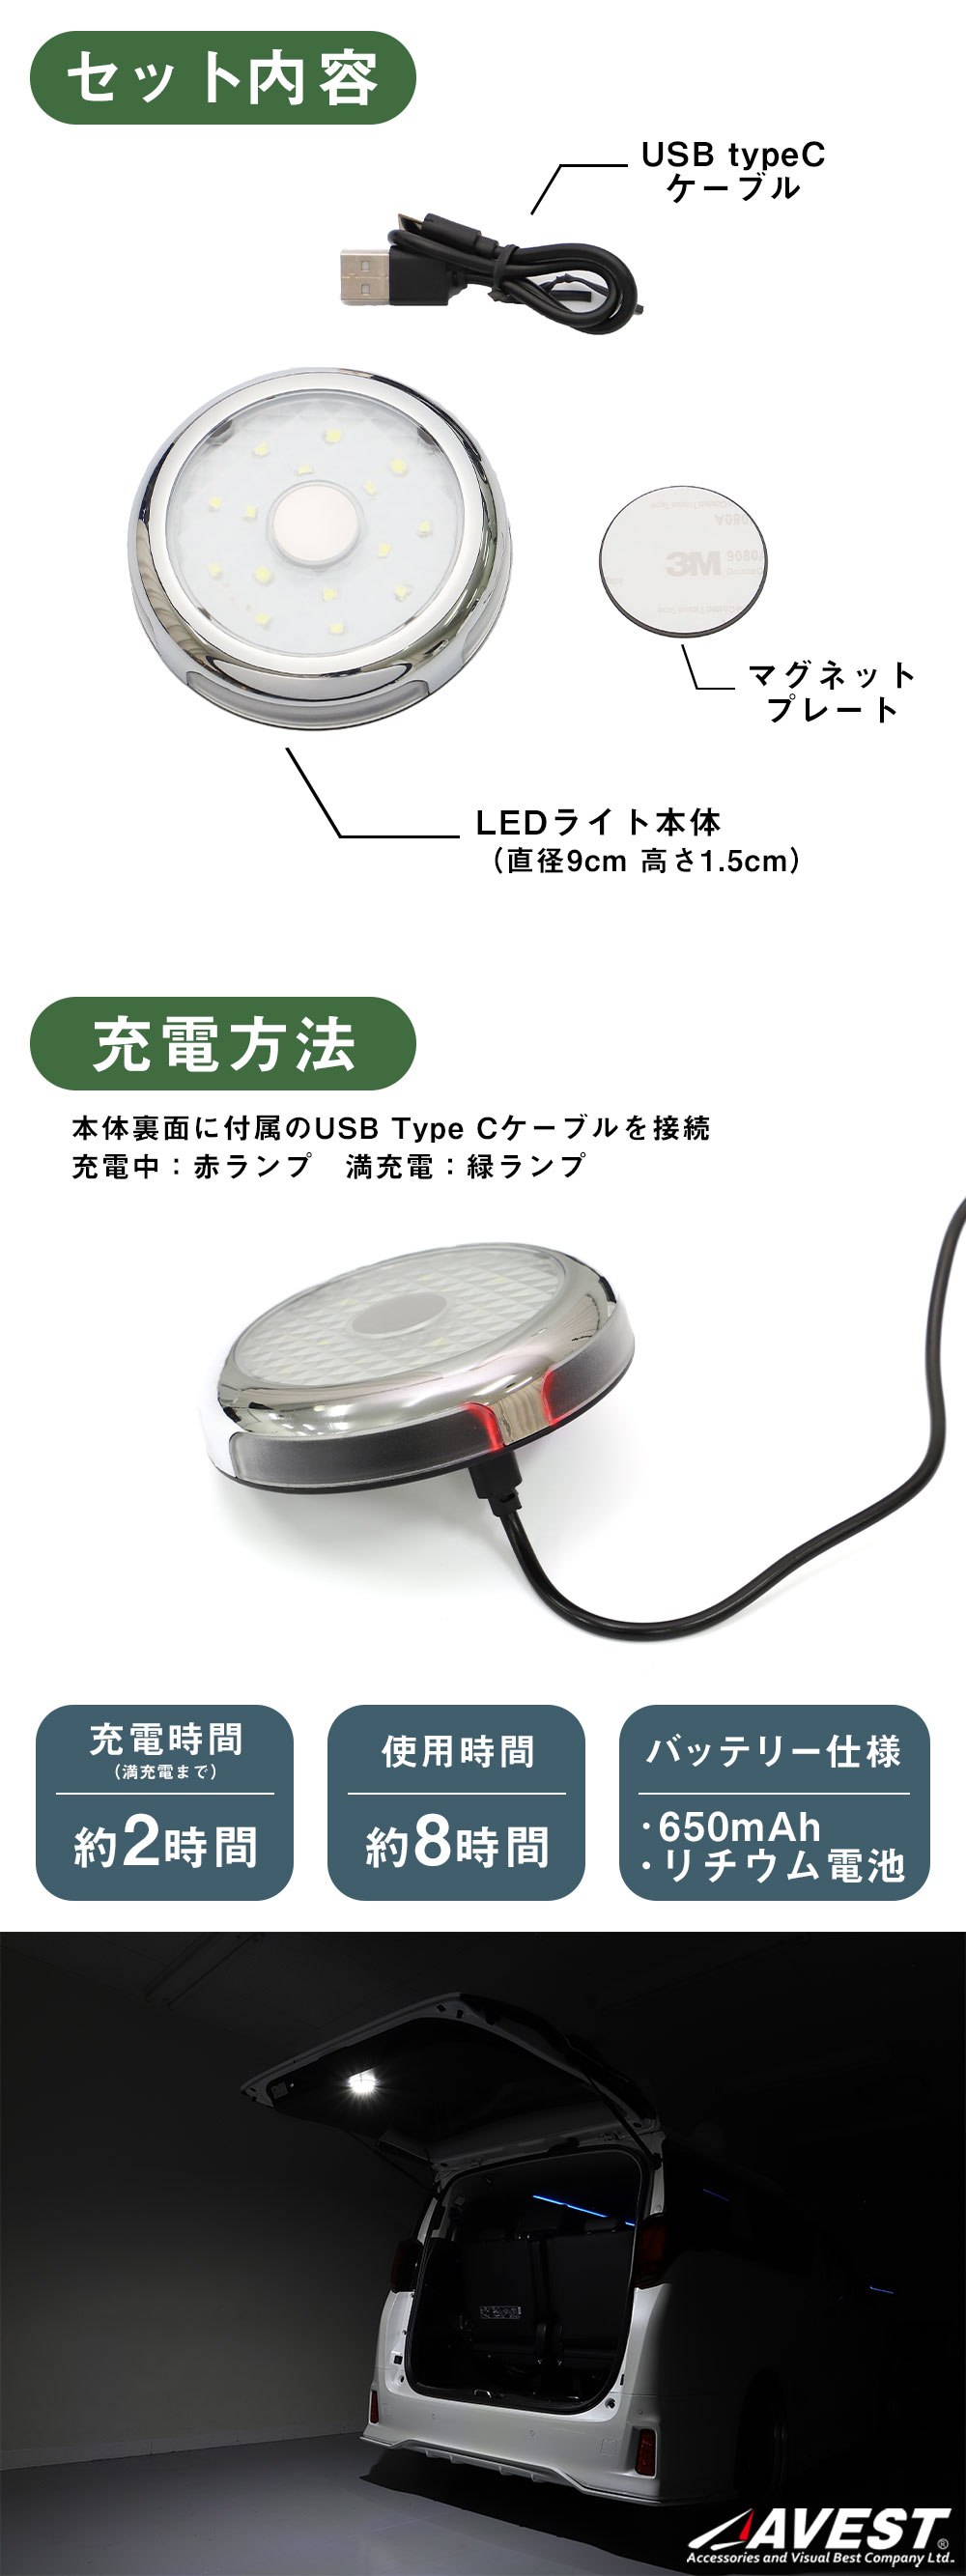 マグネット式LEDライト-AVEST